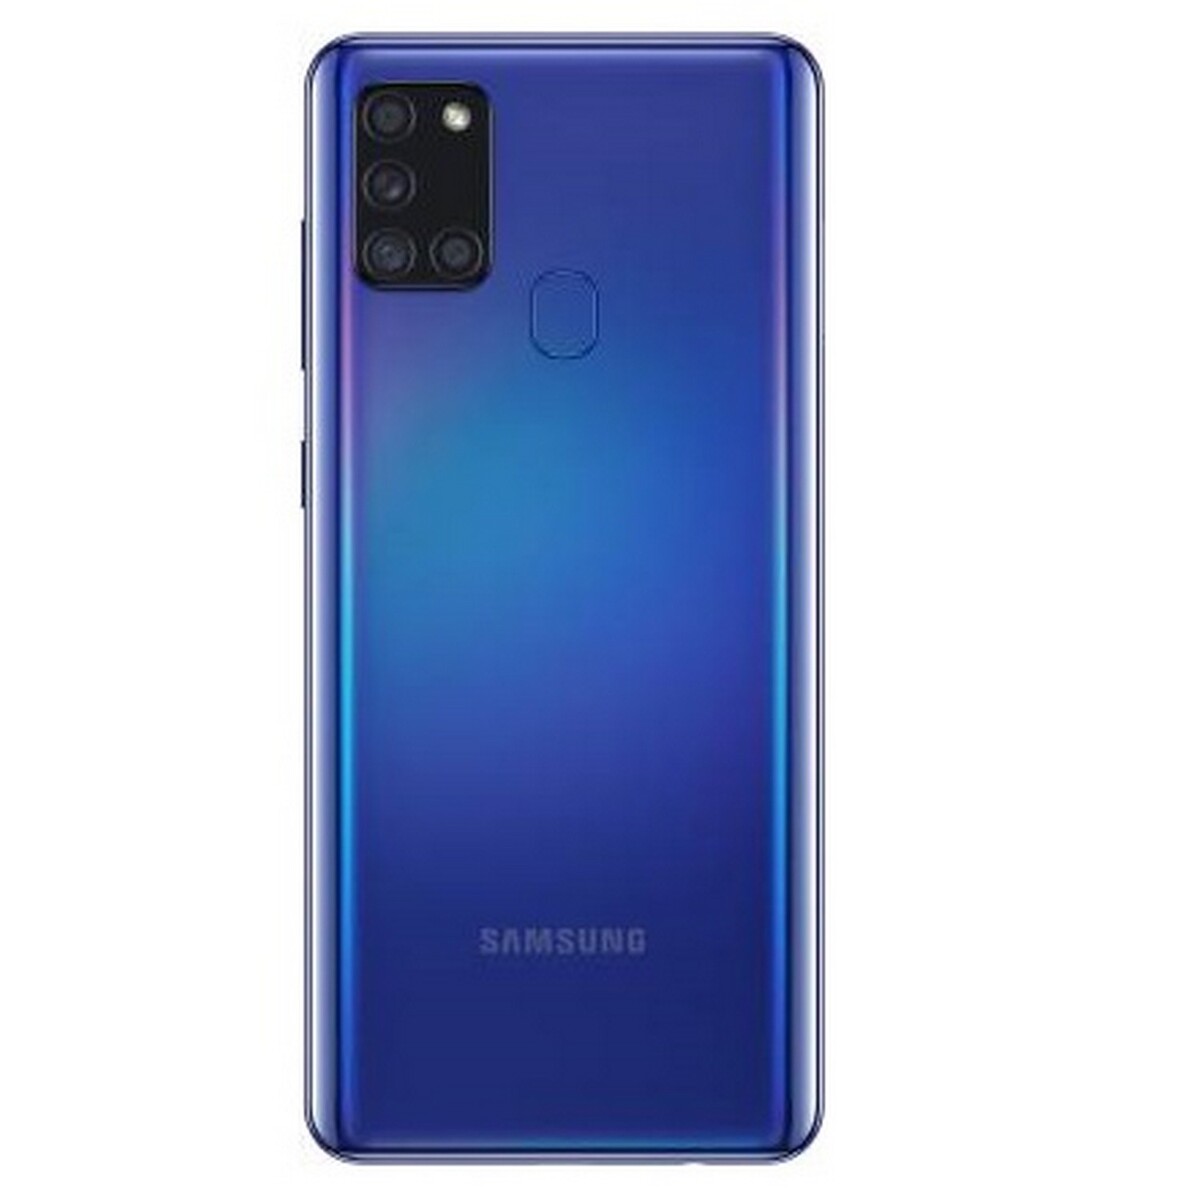 Samsung A21s 4GB /64GB  Blue